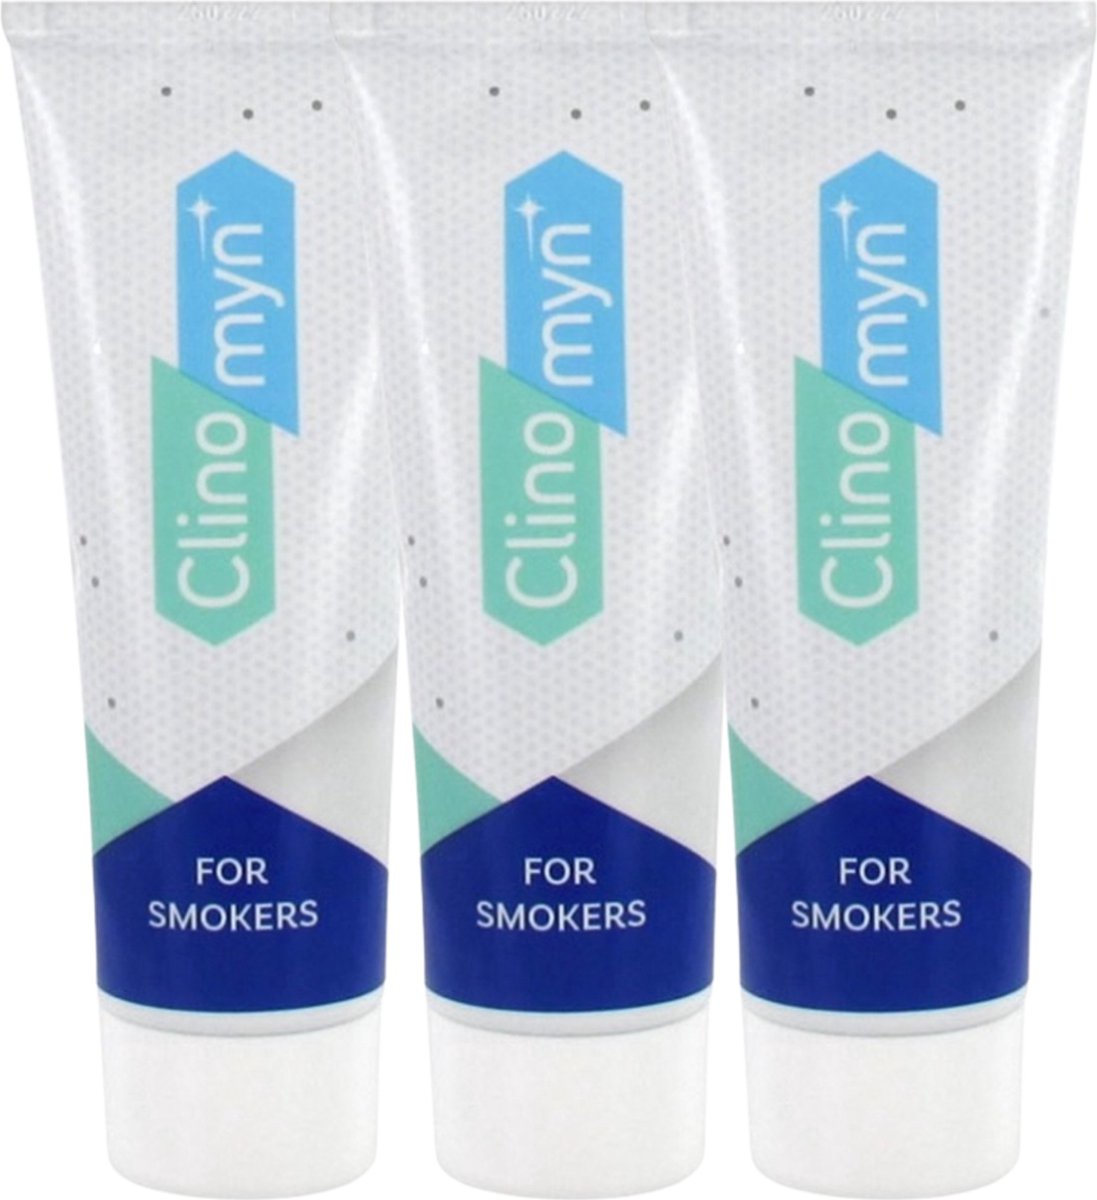 Clinomyn Rokers Tandpasta - Voorkomt en Verwijdert Nicotine Aanslag op Tanden - Voordeelverpakking 3 x 75 ml